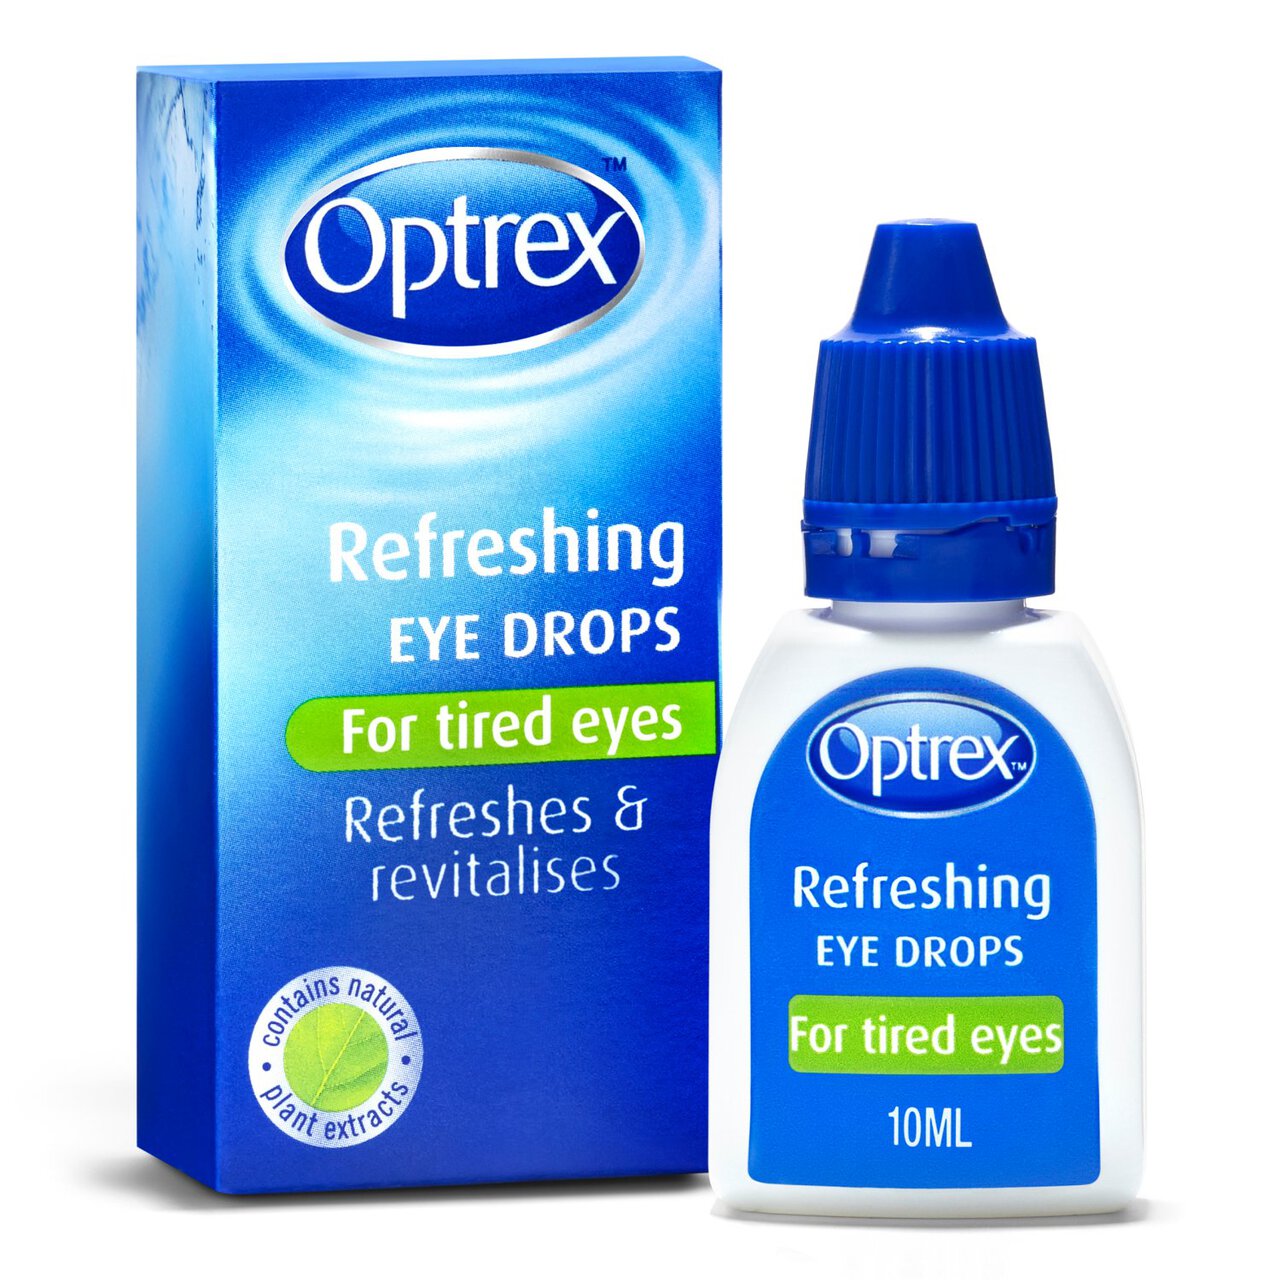 Optrex Refreshing Eye Drops For Tired Eyes Revitalises 10ml